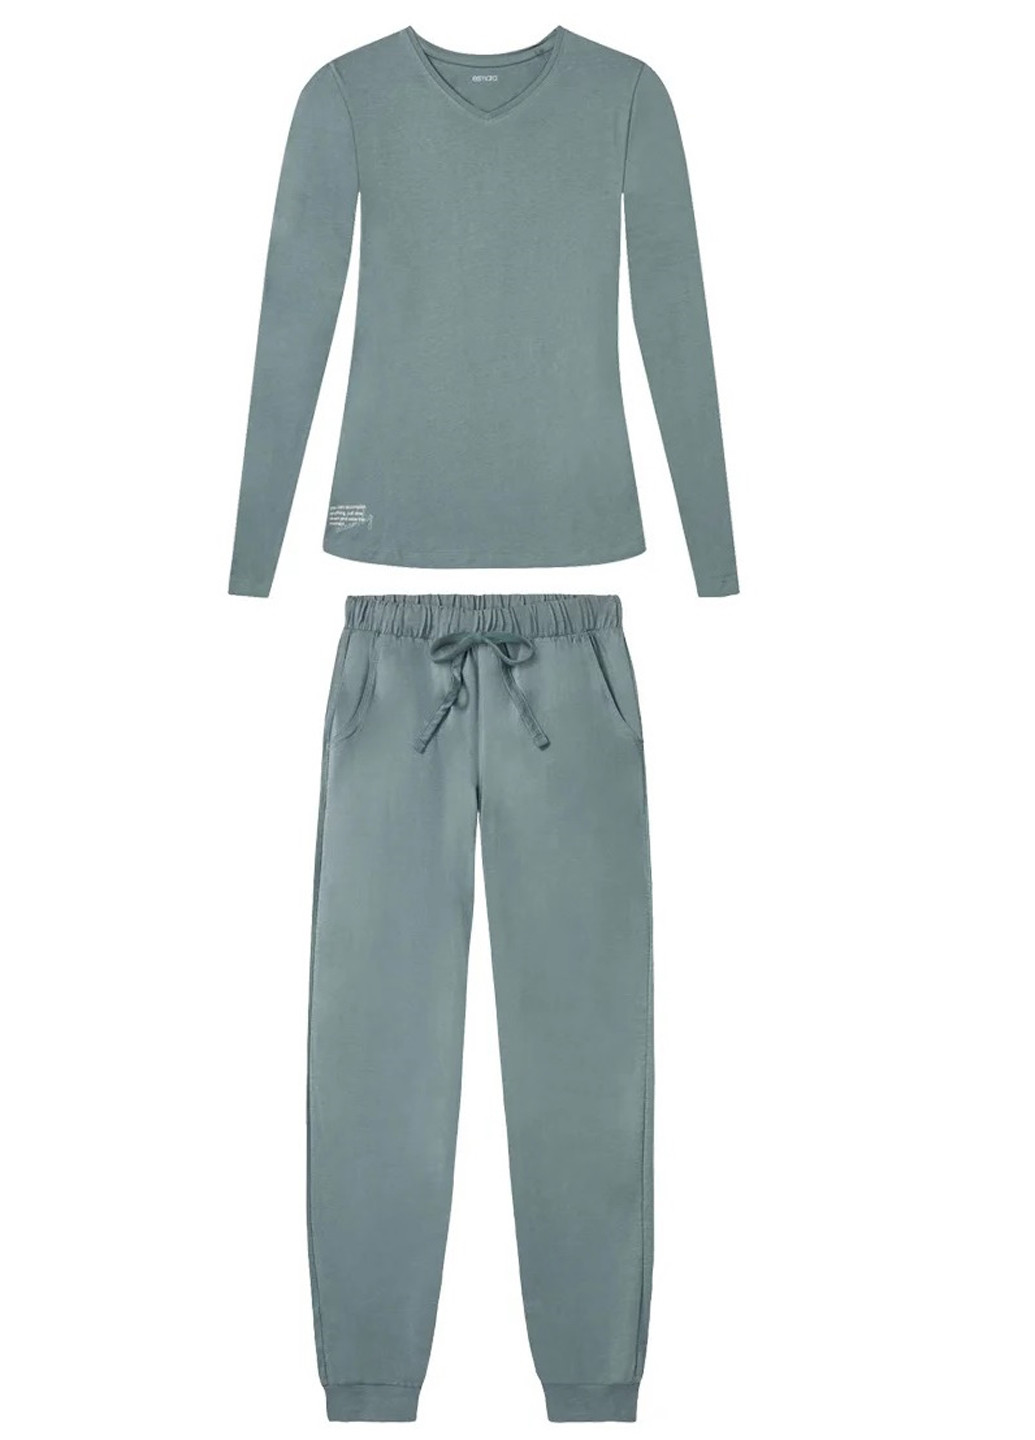 Мятная всесезон пижама (лонгслив, брюки) лонгслив + брюки Esmara